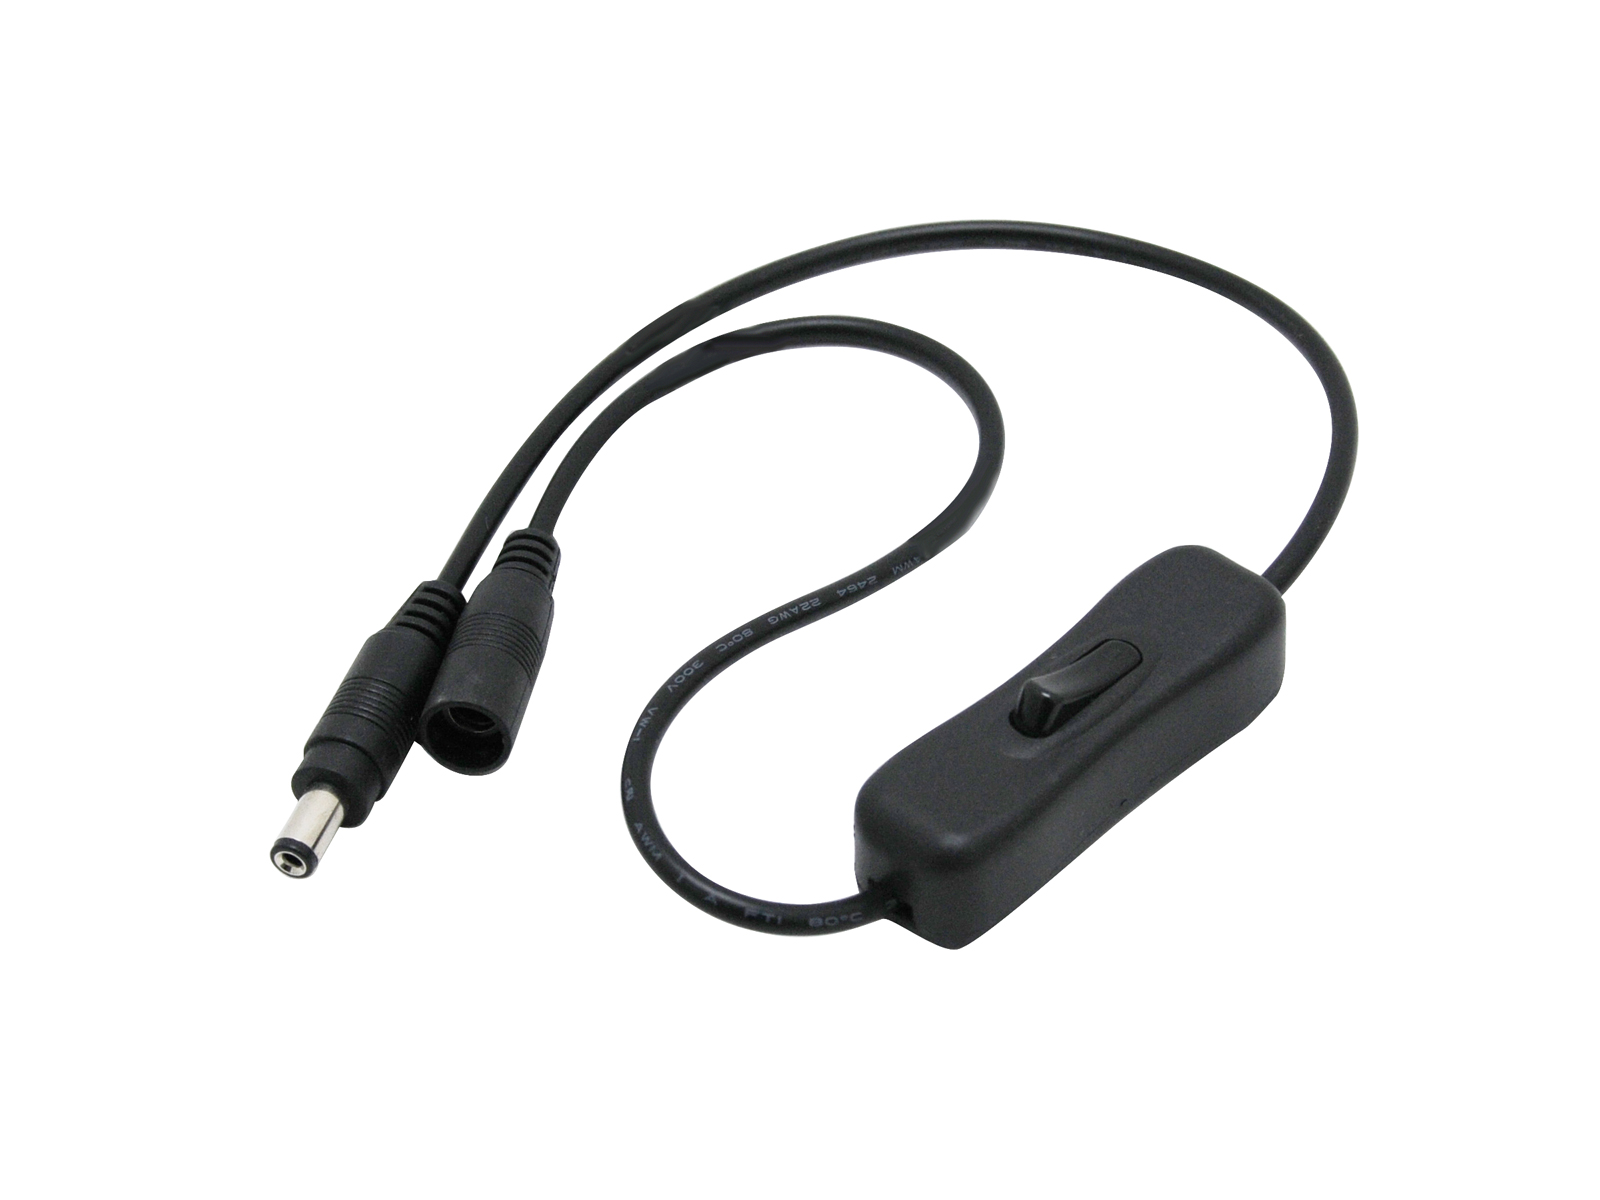 Kabel mit Schalter DC Stecker / DC Buchse schwarz 5,5/2,1mm kaufen